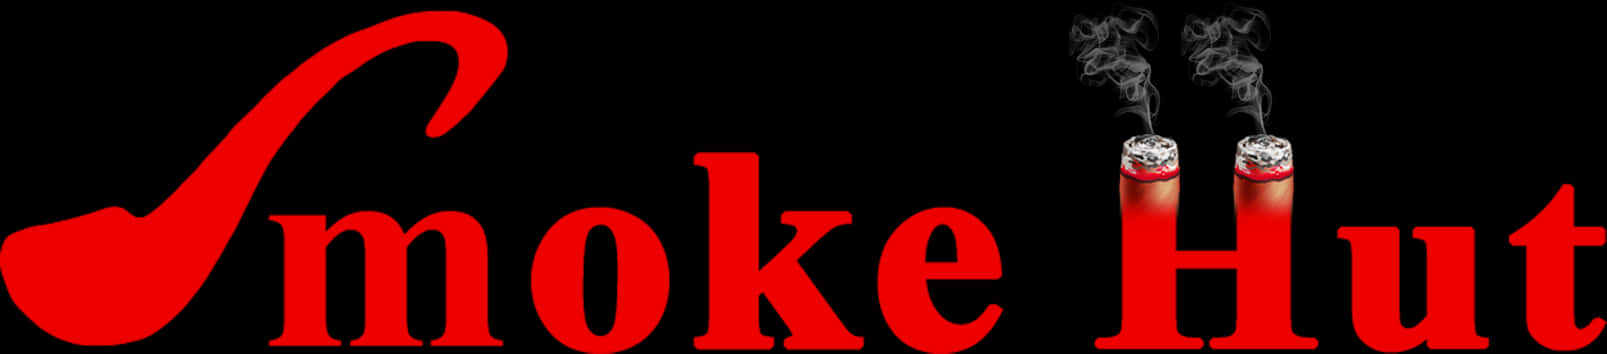 Red Smoke Hut Logo PNG